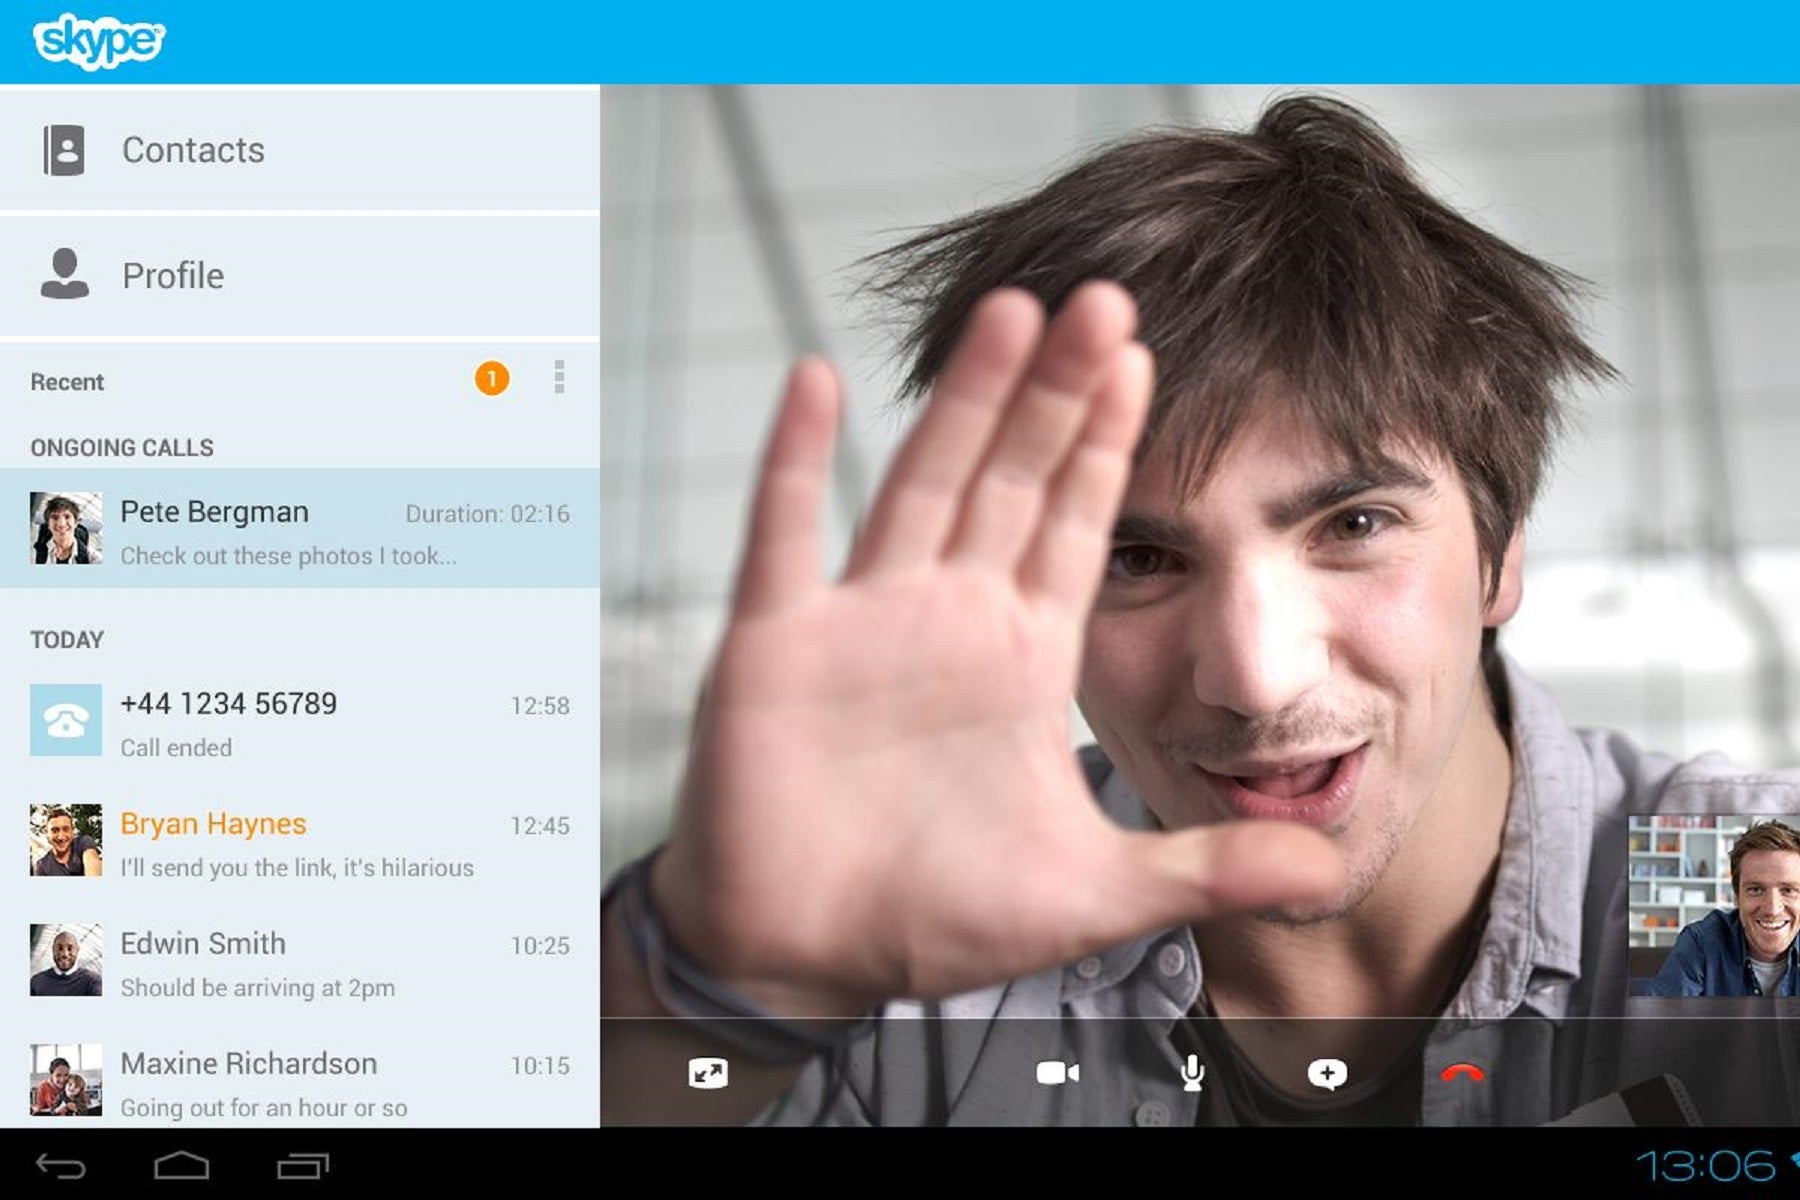 Microsoft mendengarkan semua percakapan Anda di Skype